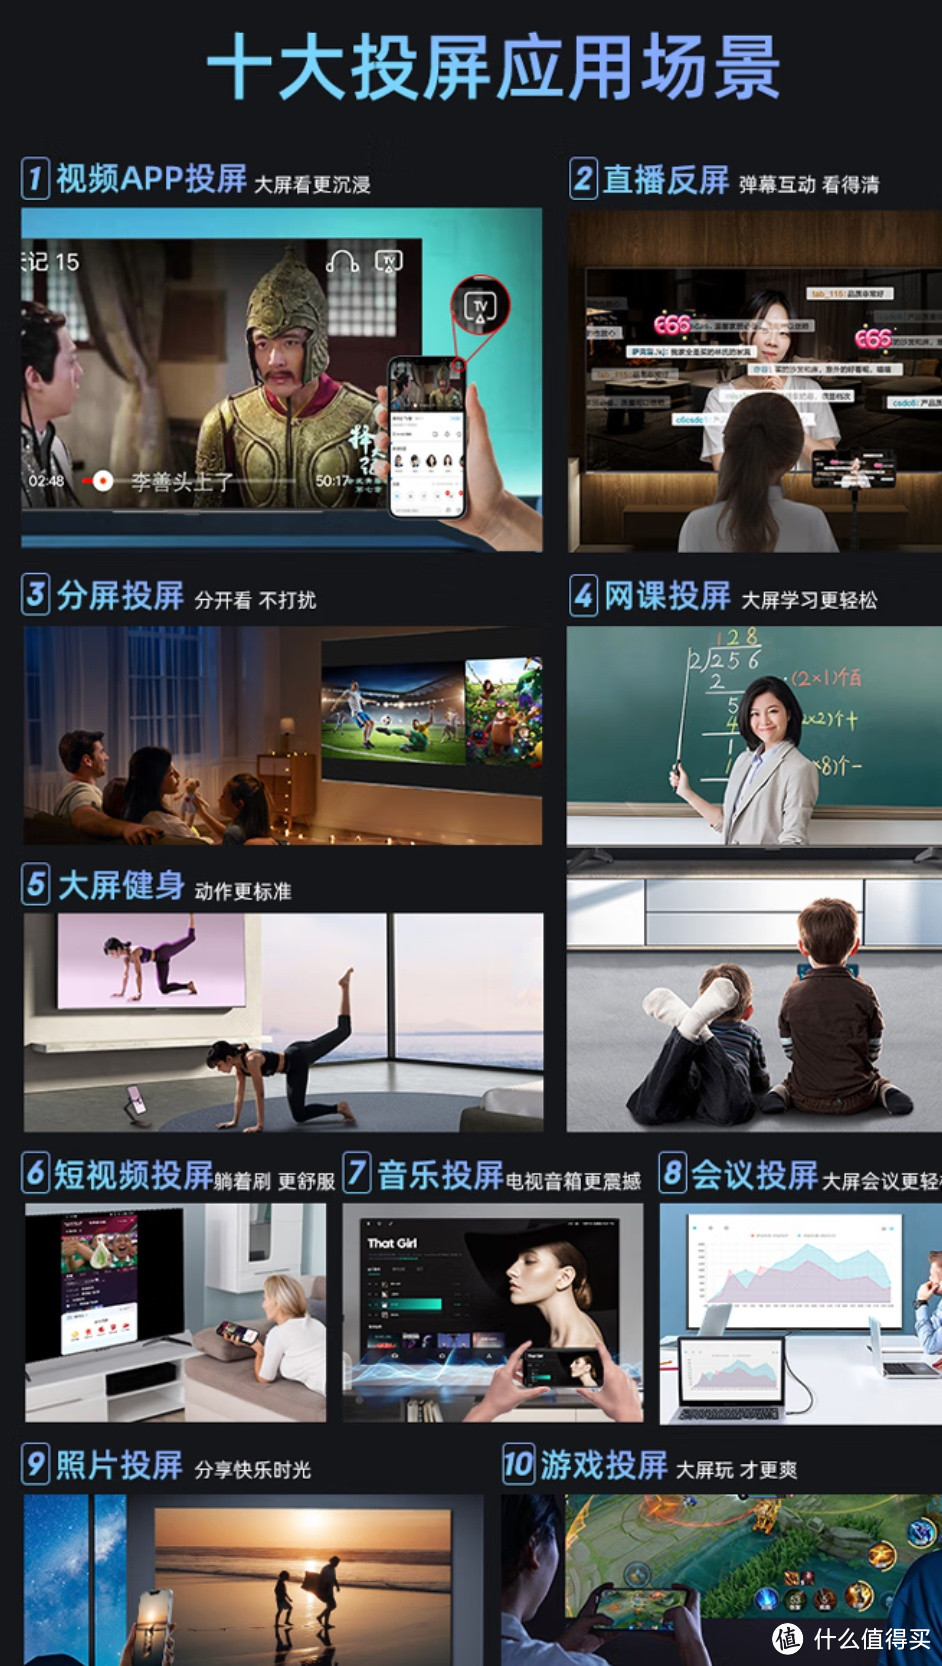 长虹电视 75D7 PRO：75 寸大屏，带来震撼视听体验